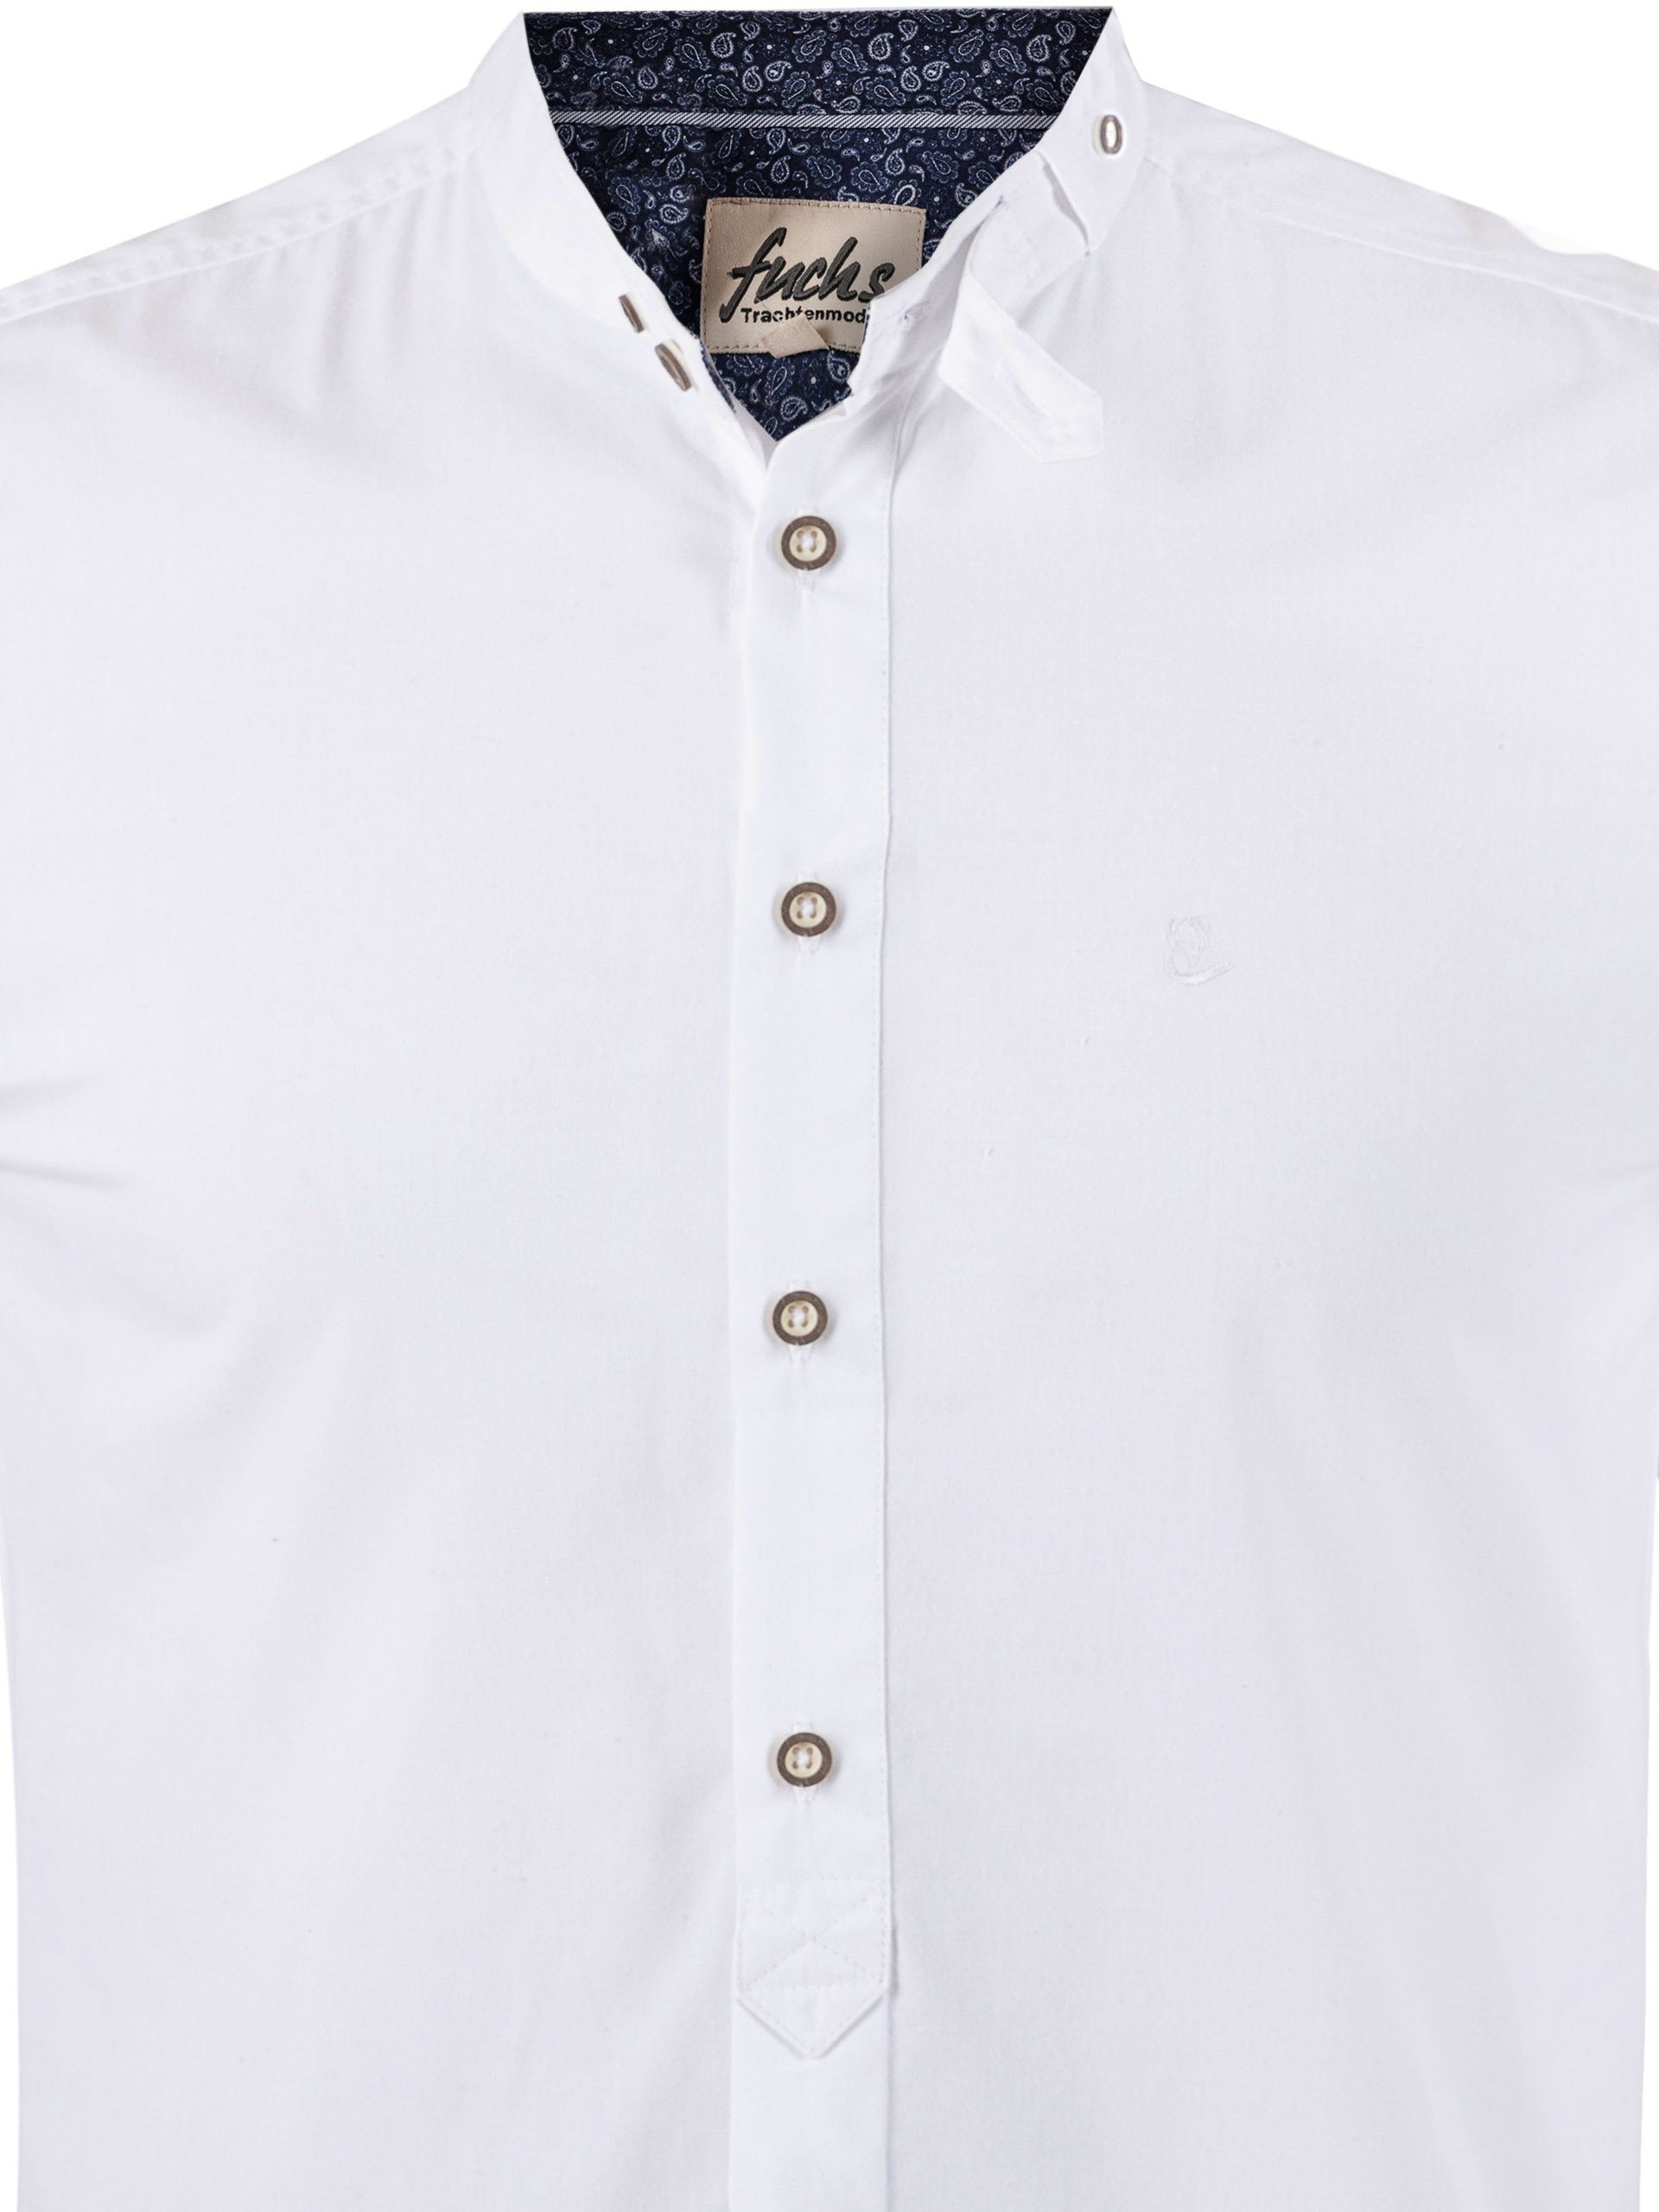 FUCHS Trachtenhemd Hemd Stehkragen mit Albert weiß-marine